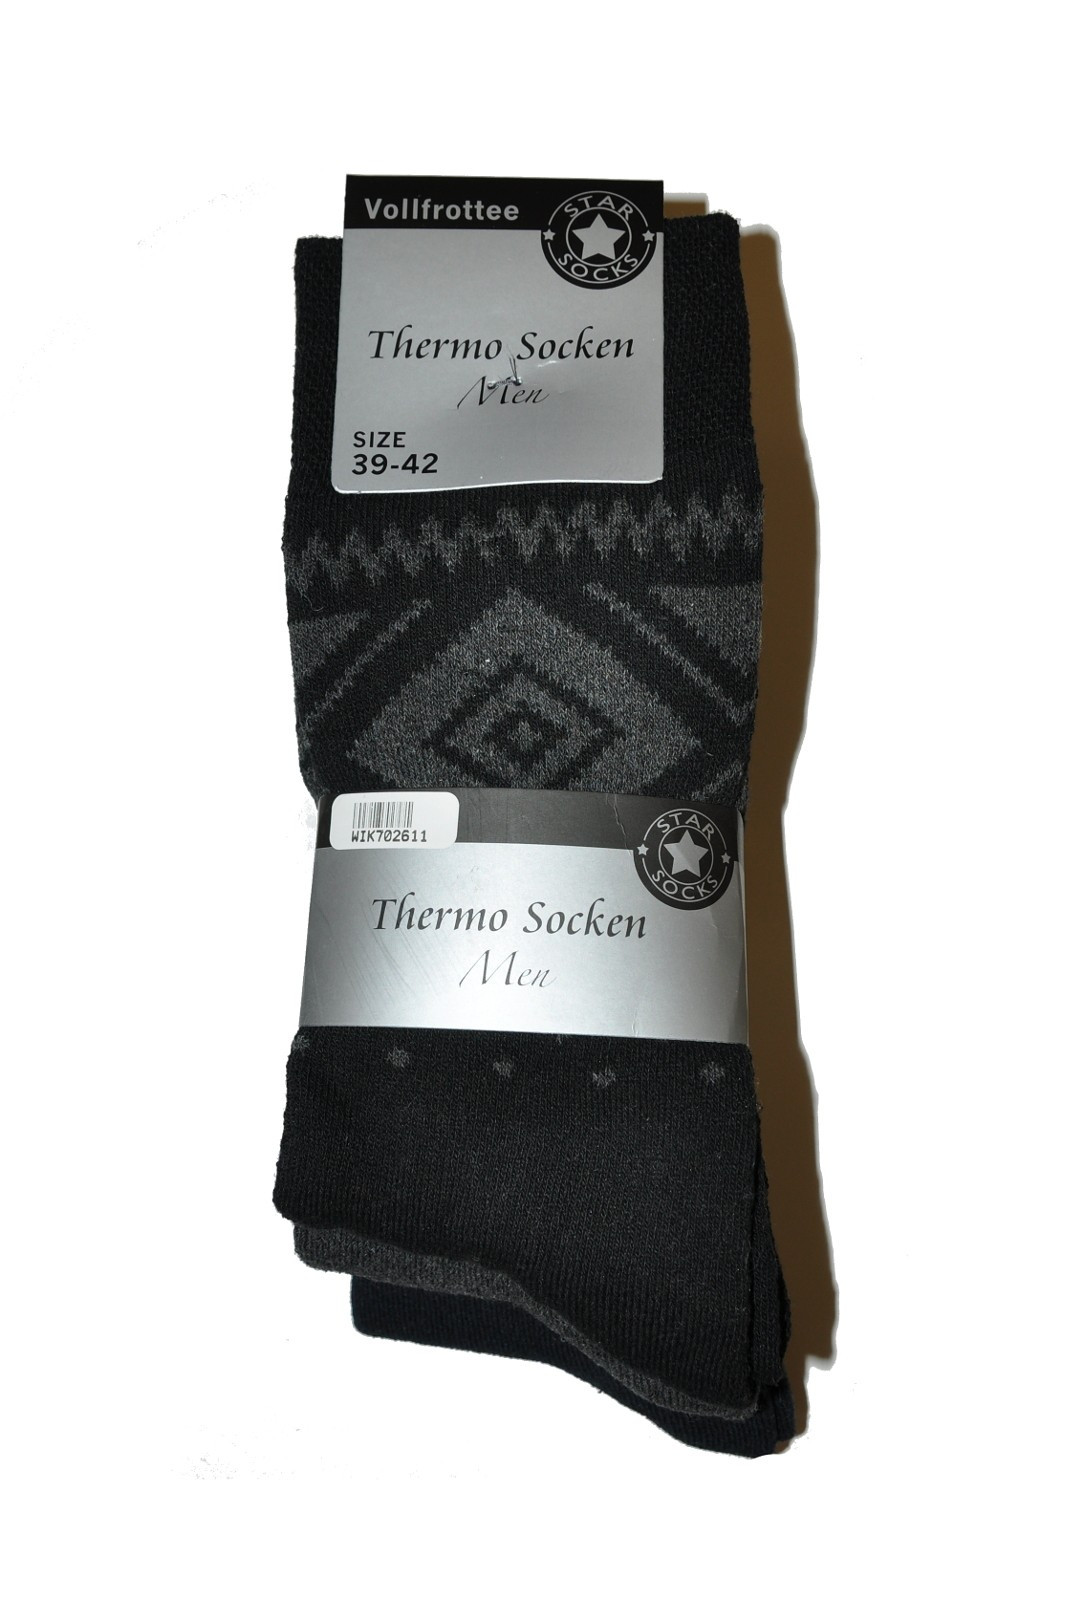 Pánské ponožky Wik Thermo Socken Men 7026 A'3 směs barev 39-42